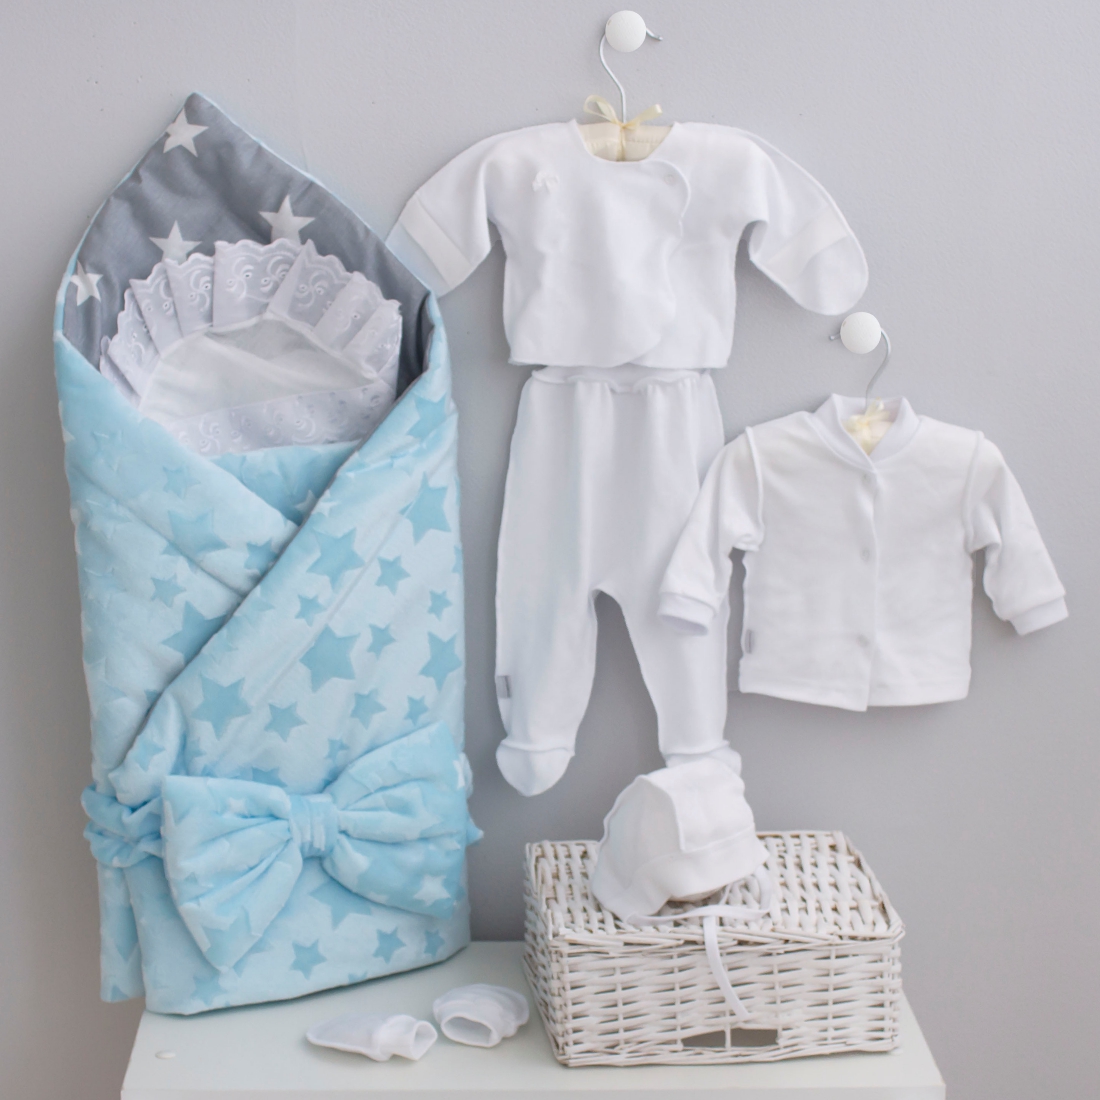 Какая одежда необходима для новорождённых?